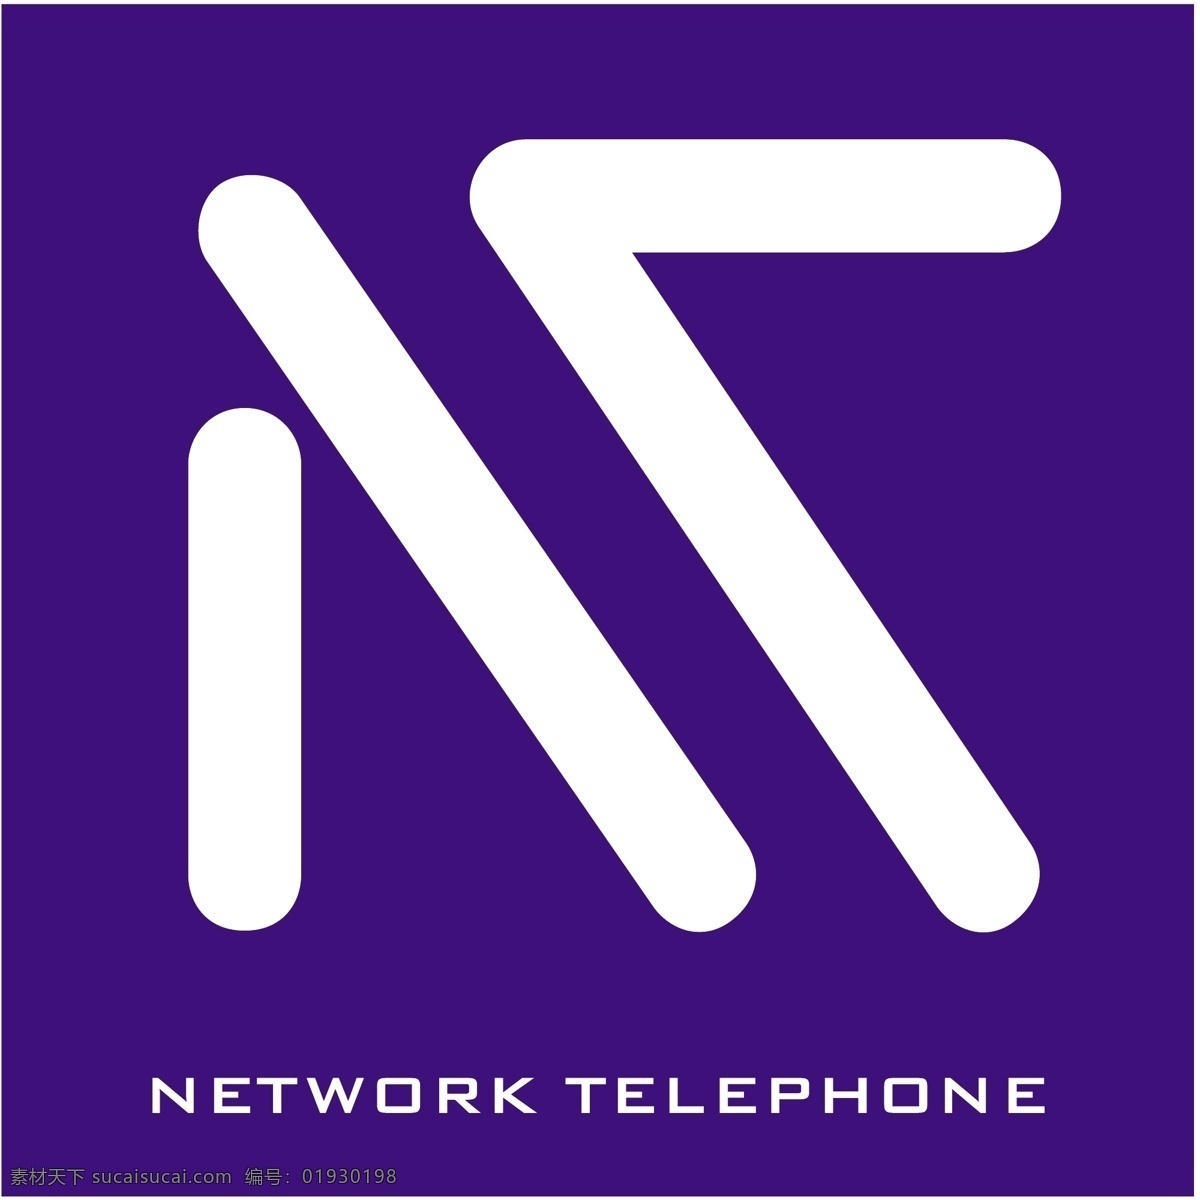 网络电话 免费 标志 psd源文件 logo设计